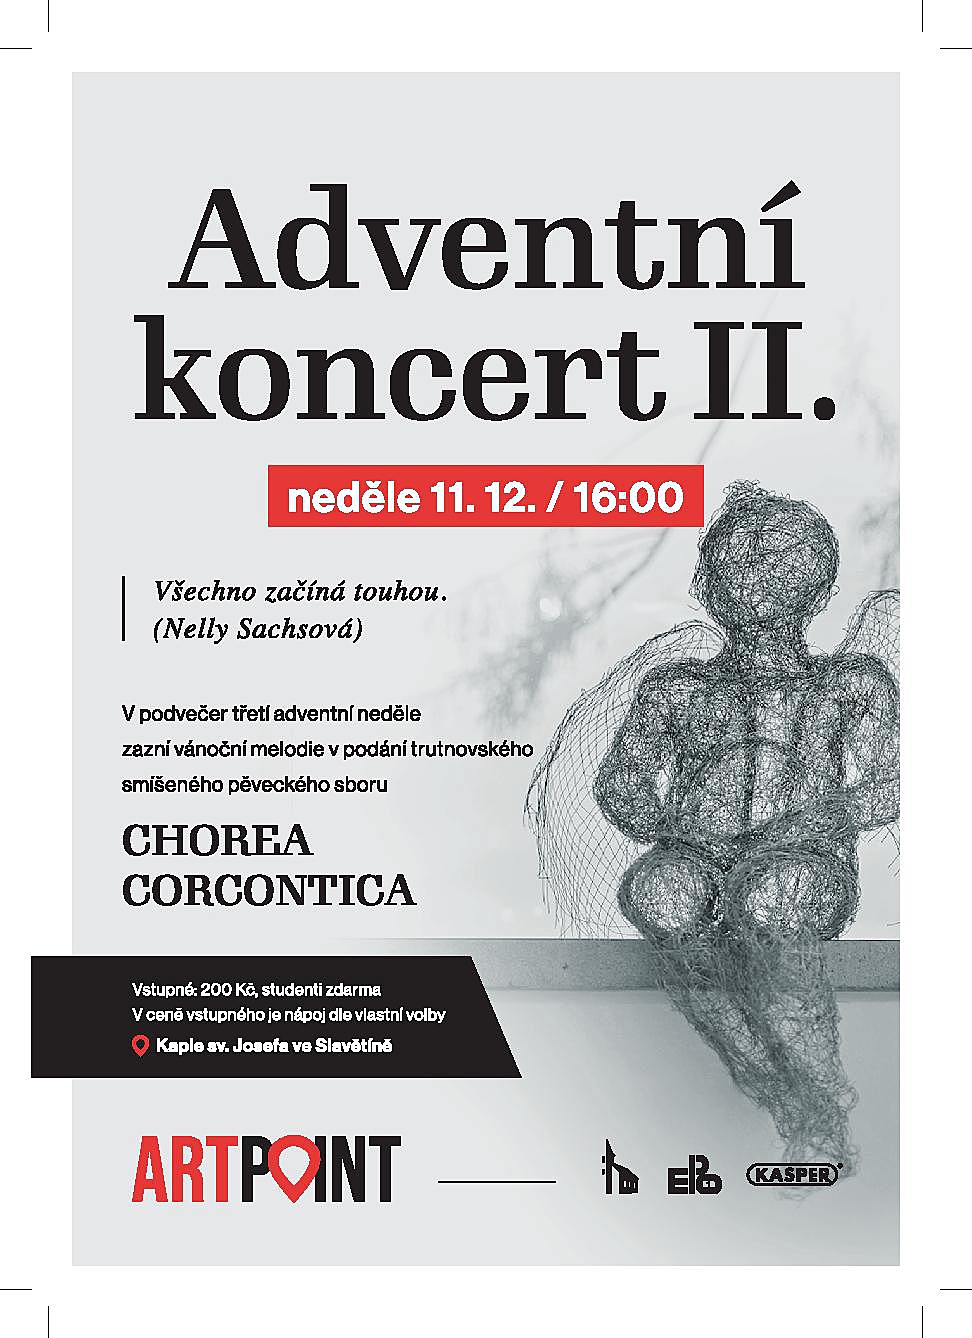 Adventní koncert v kapli sv. Josefa ve Slavětíně